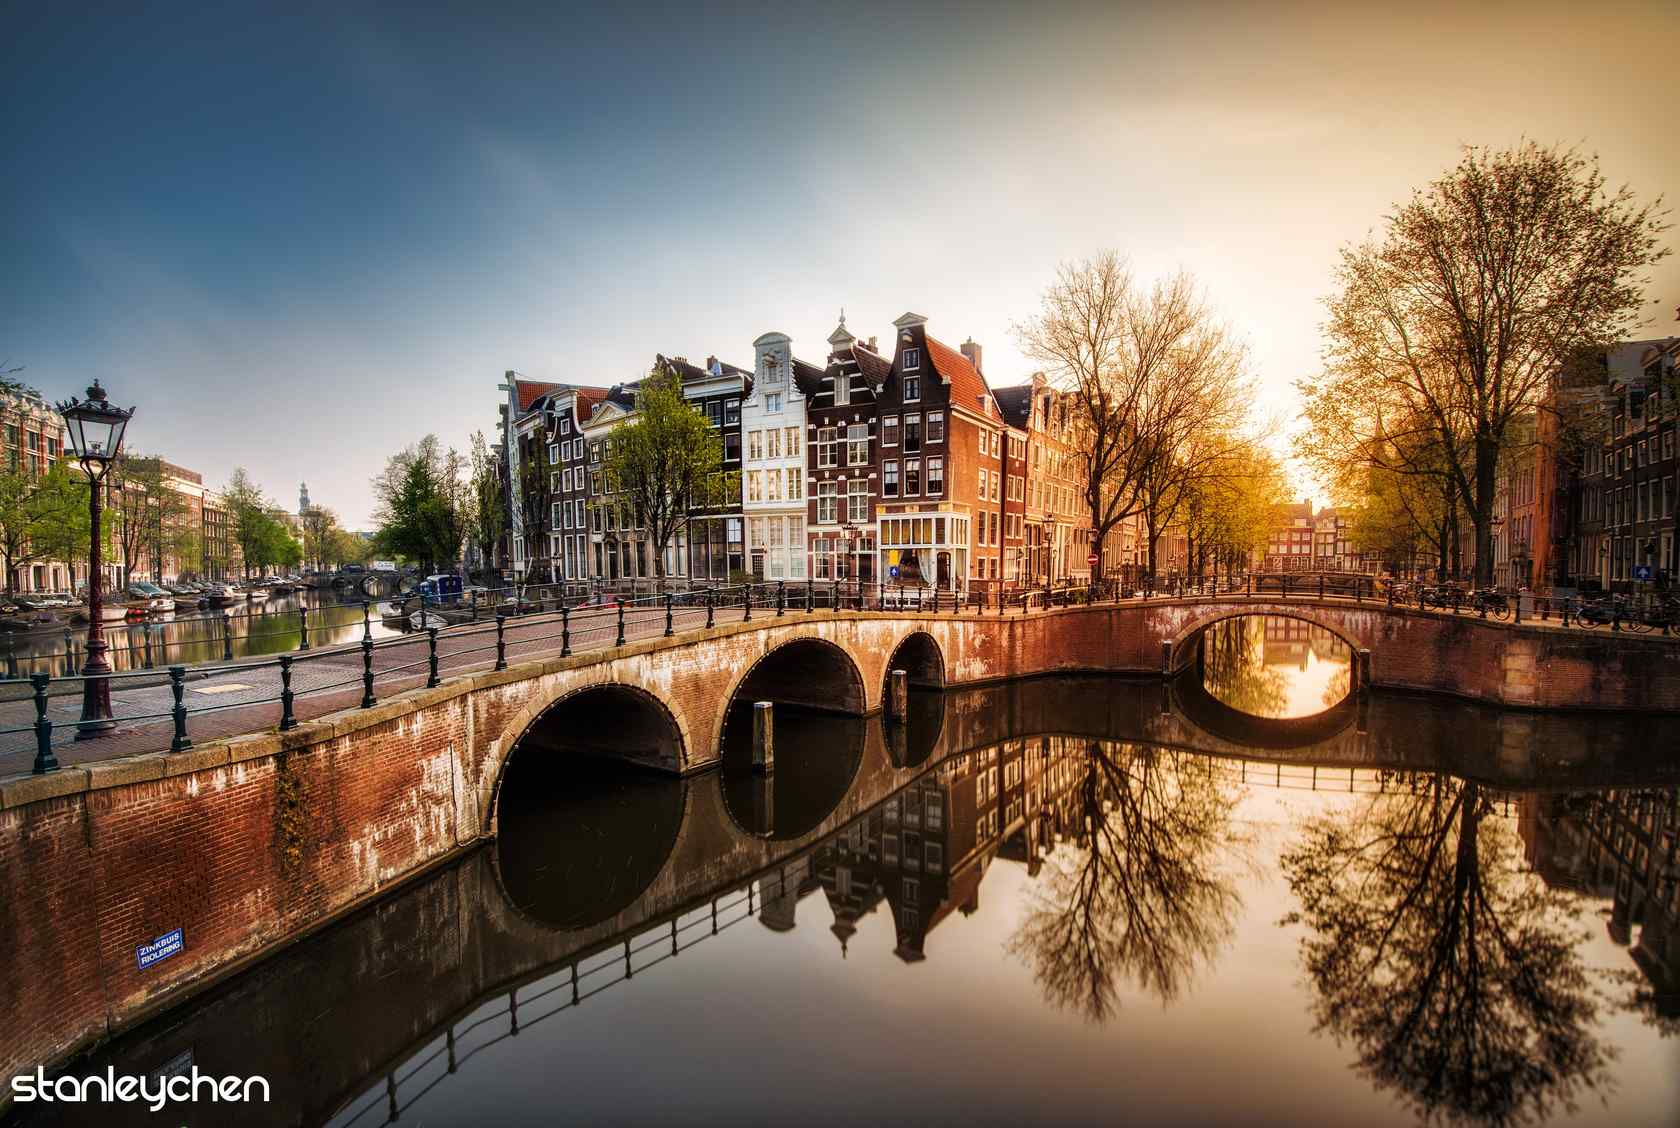 荷兰阿姆斯特丹城市风景桌面壁纸